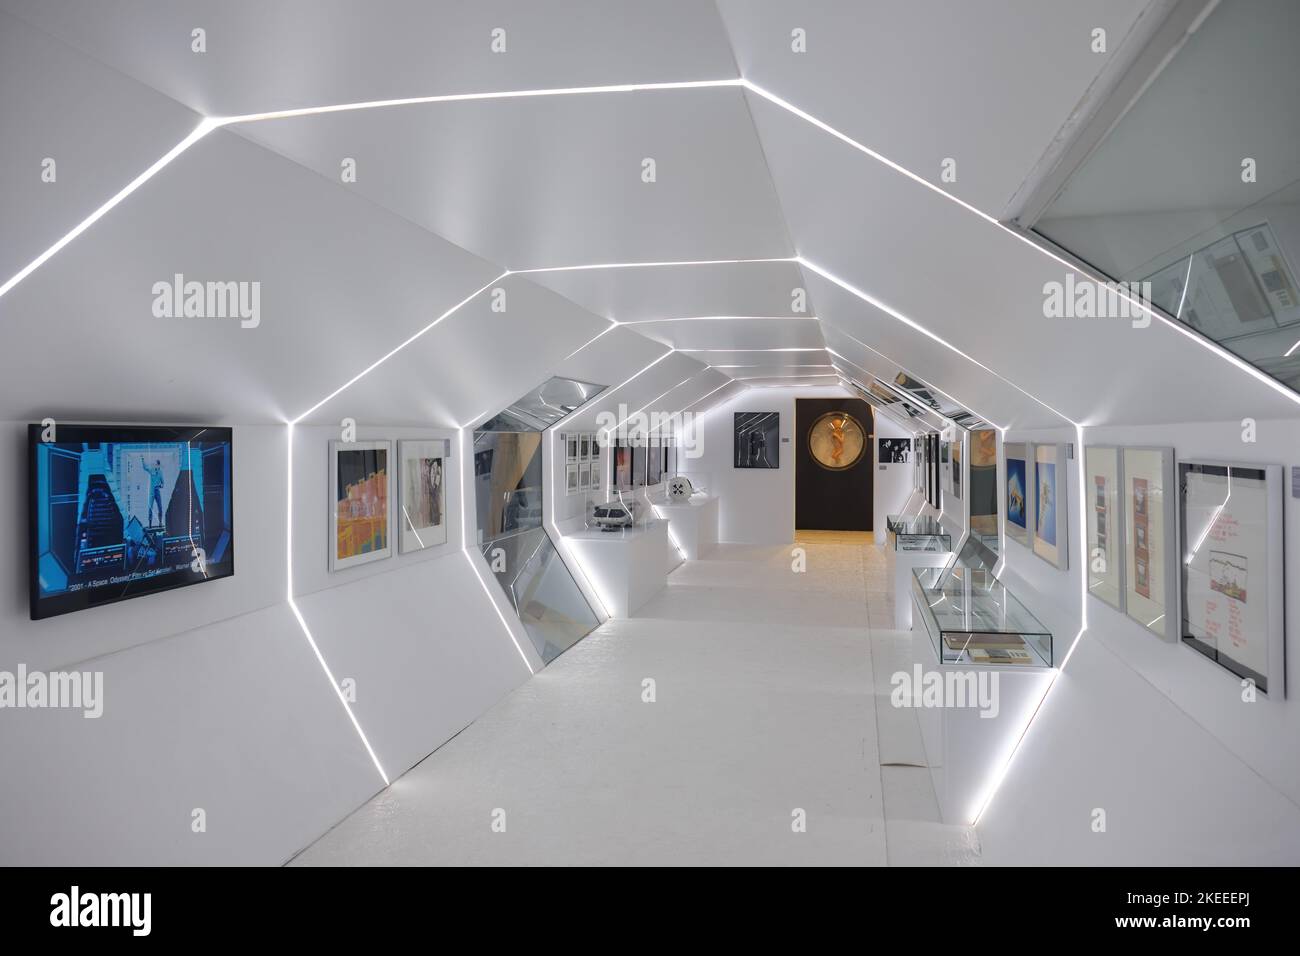 Planta superior del Museo de Cine de Estambul que acoge la exposición Stanley Kubrick con materiales de 2001: Una odisea del espacio, clásico de culto de ciencia ficción. Foto de stock